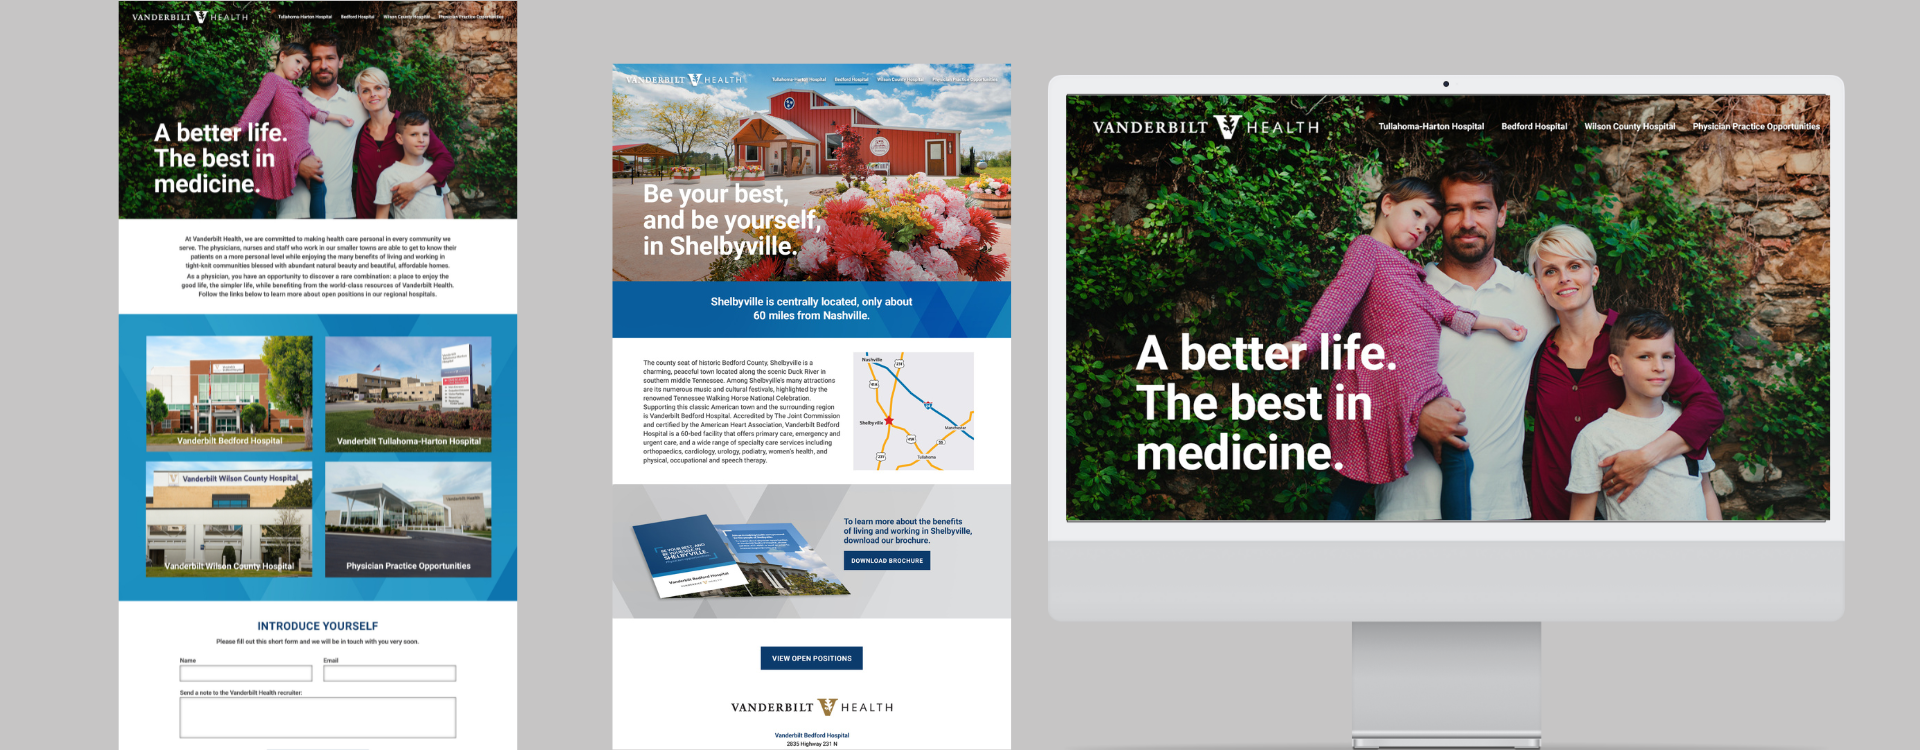 Vanderbilt Health website pages designed by AcrobatAnt.